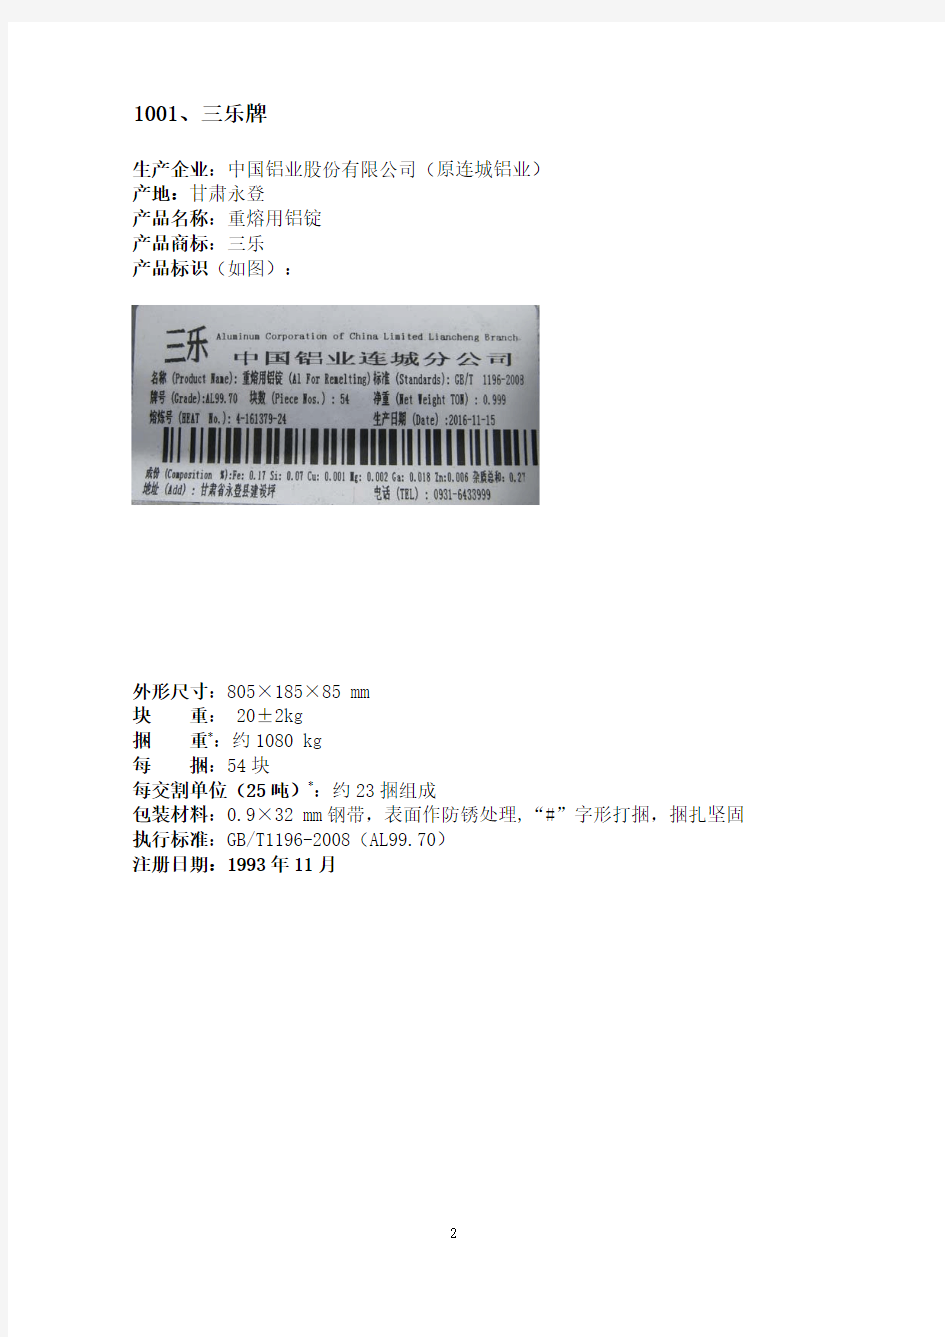 上海期货交易所铝注册品牌汇总